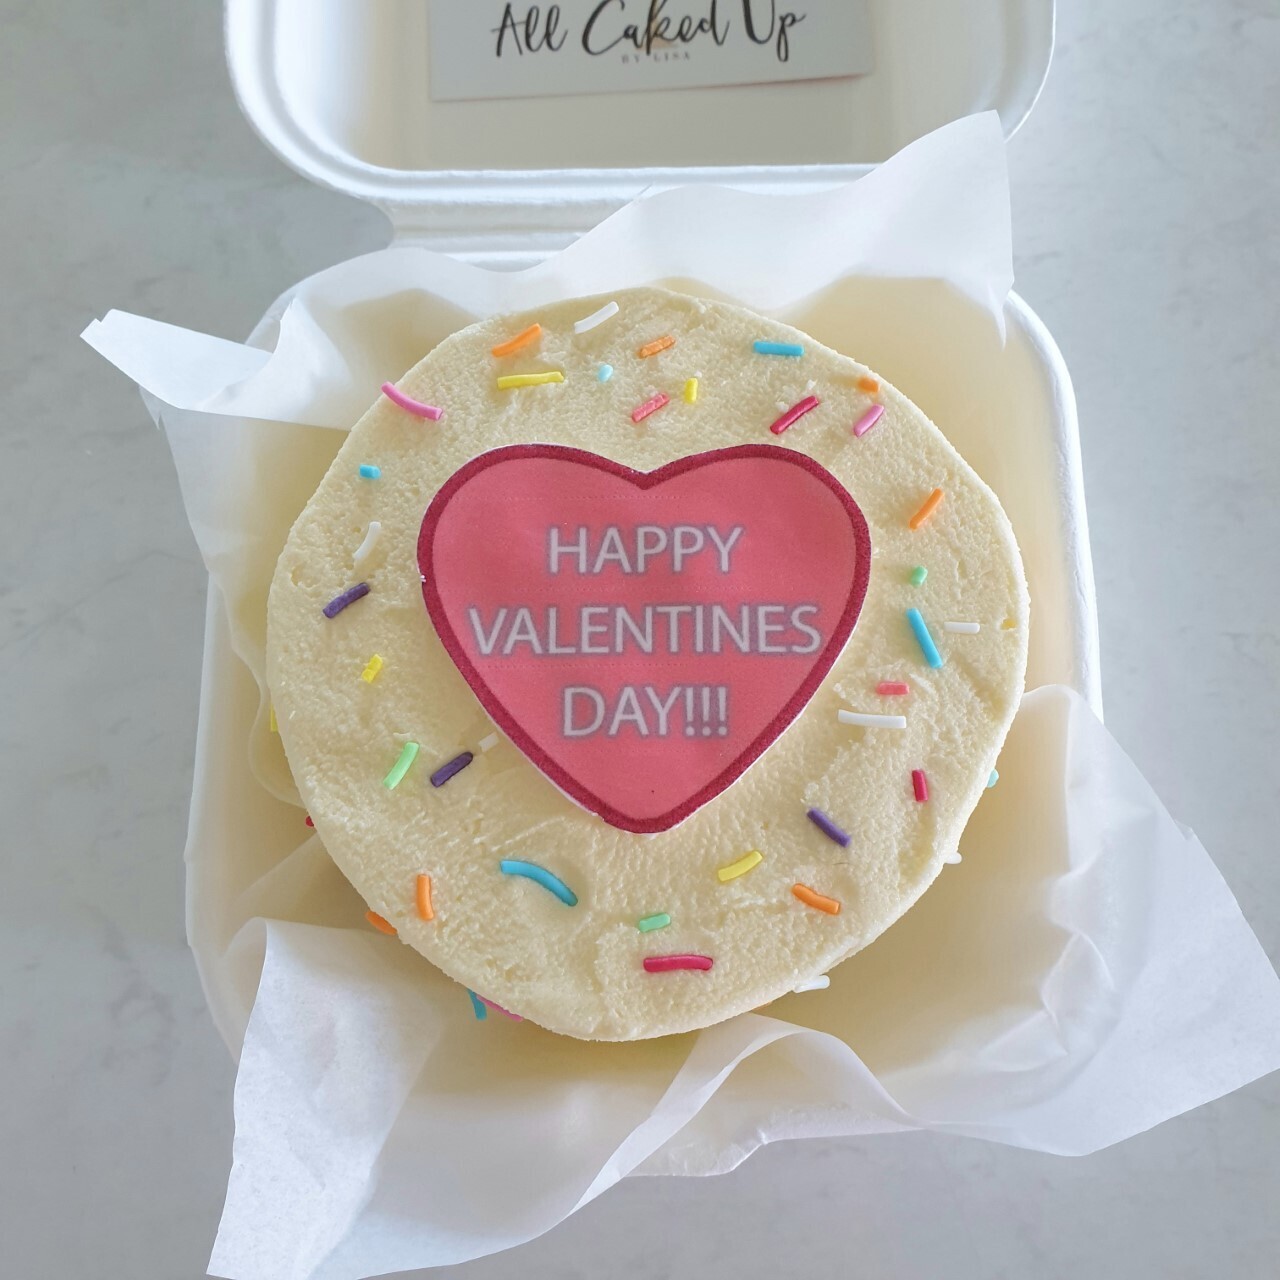 Valentines Mini Cake
Sprinkles